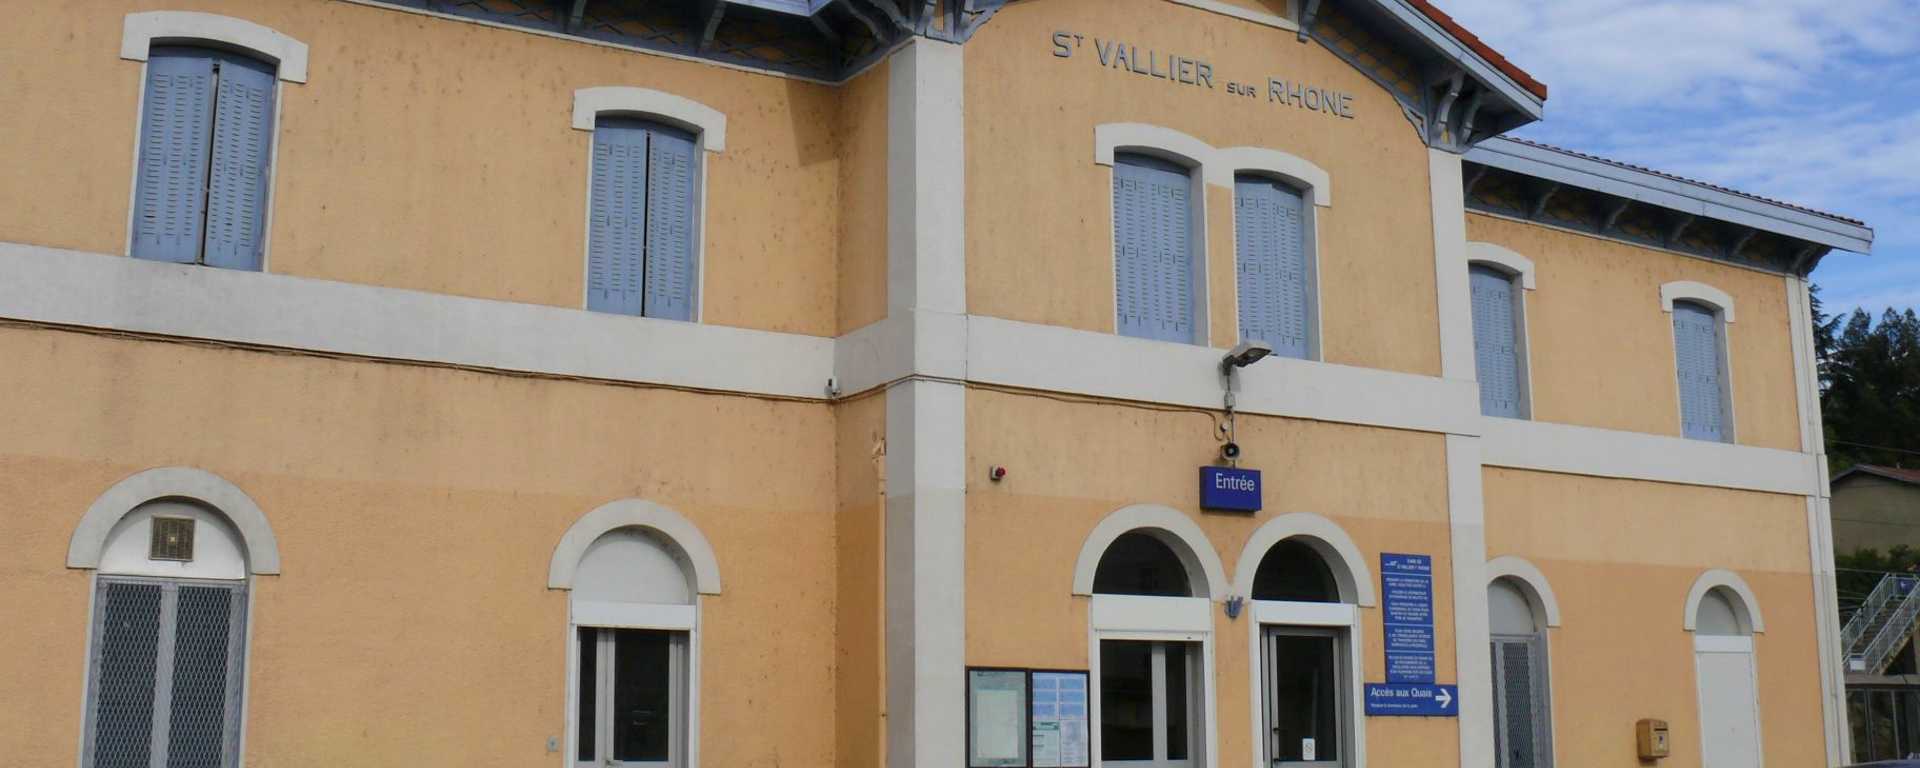 Gare de Saint-Vallier dans la Drôme